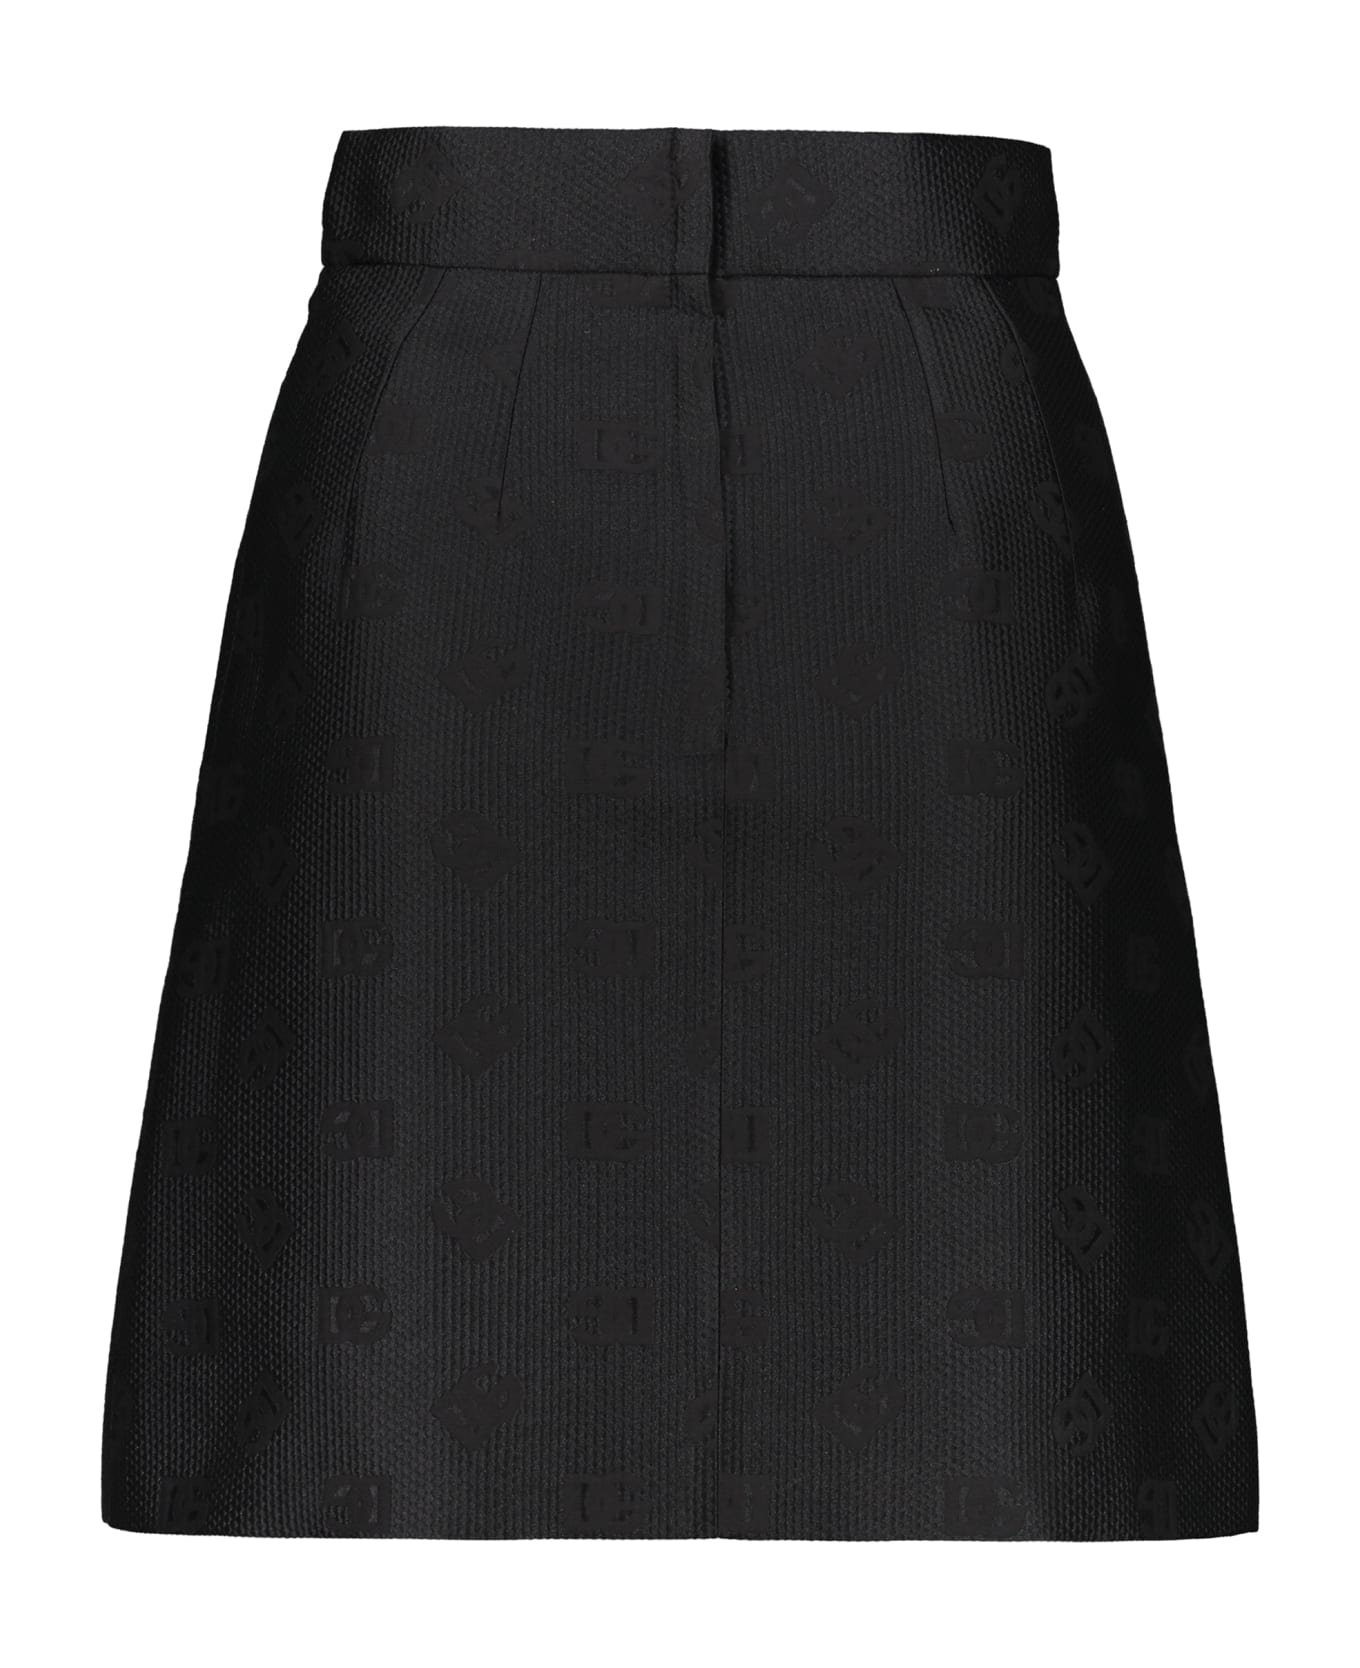 Dolce & Gabbana Logo Monogram Skirt - black スカート